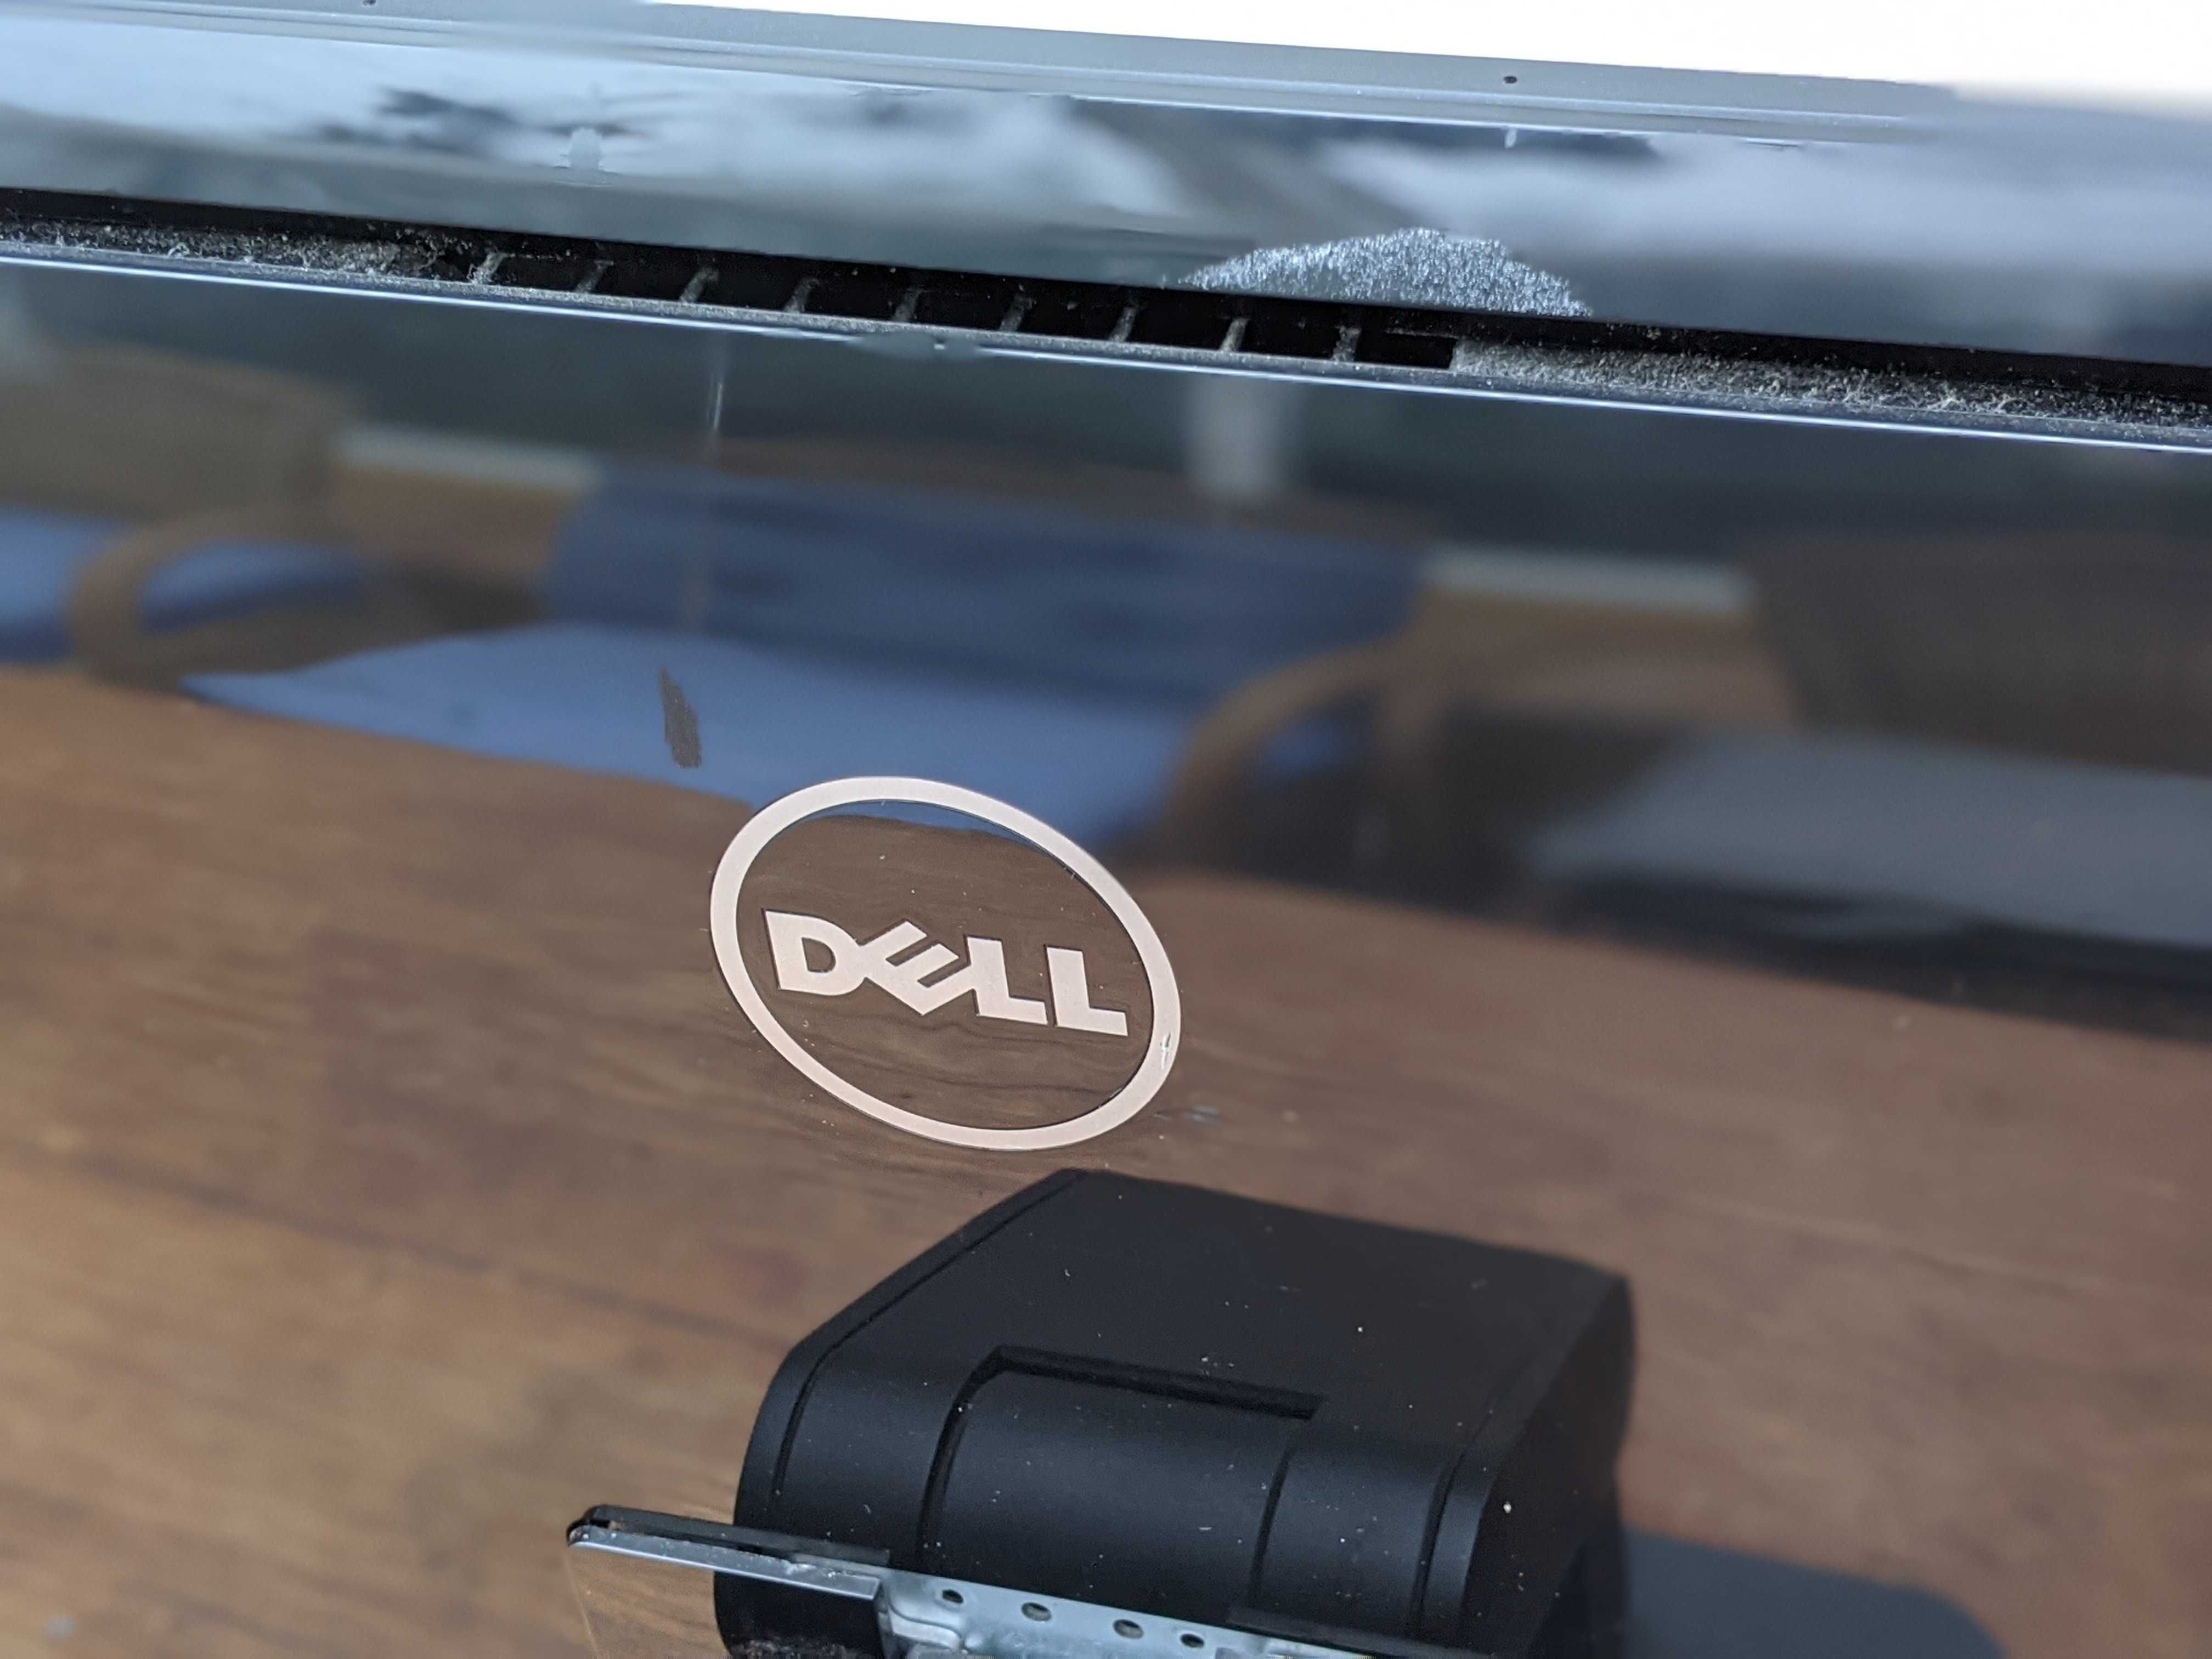 Dell Inspiron 24 Model 5459 Series - Não Funciona